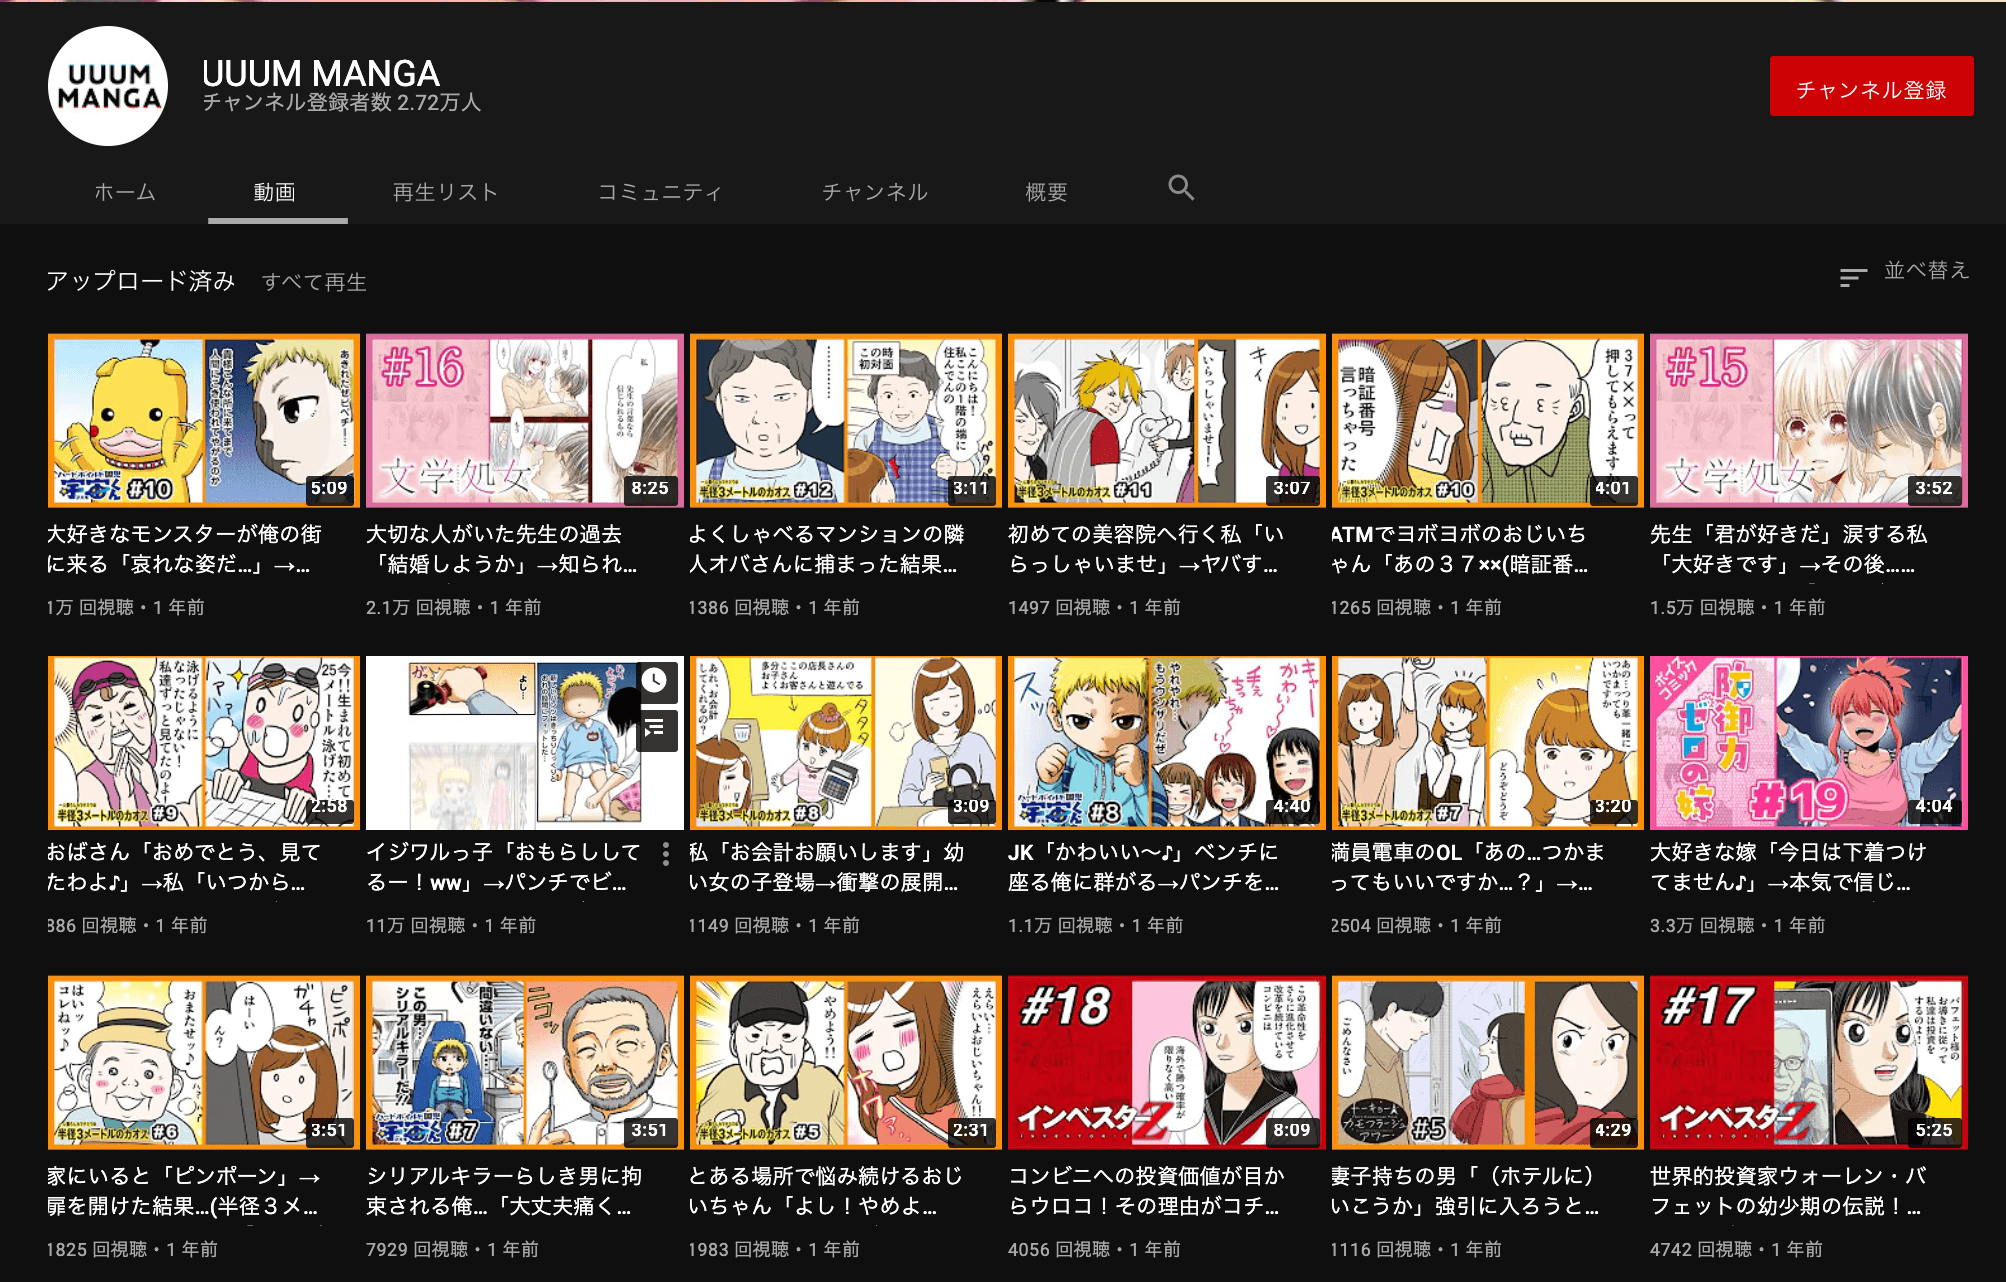 youtube-uuum manga-Withdrawal